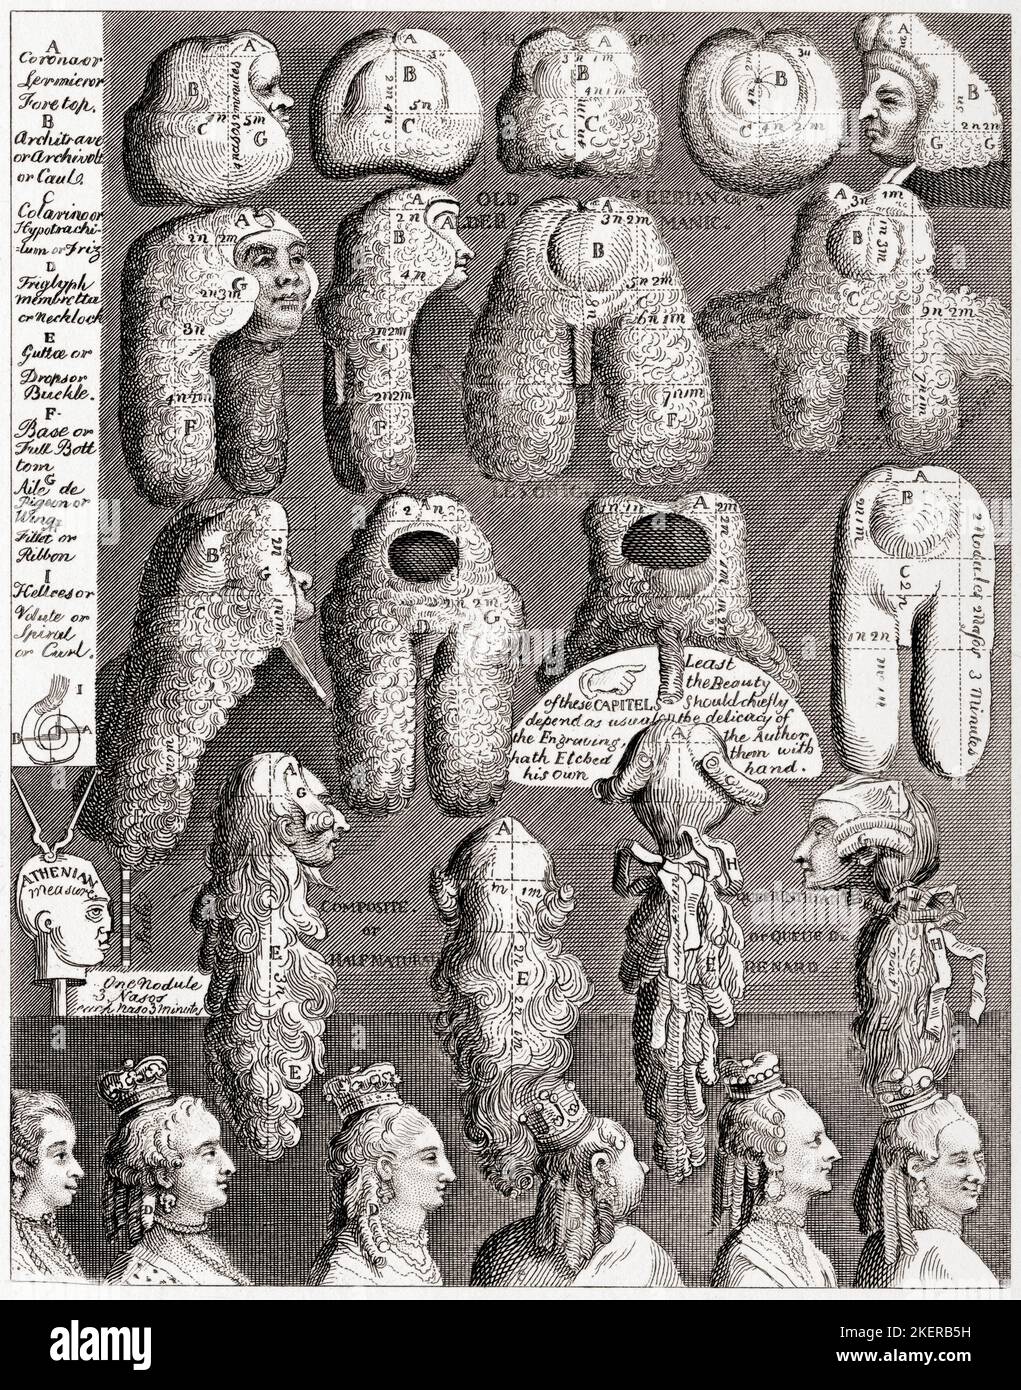 Les cinq ordres de Perriwigs. De The Works of Hogarth publié Londres 1833. Banque D'Images